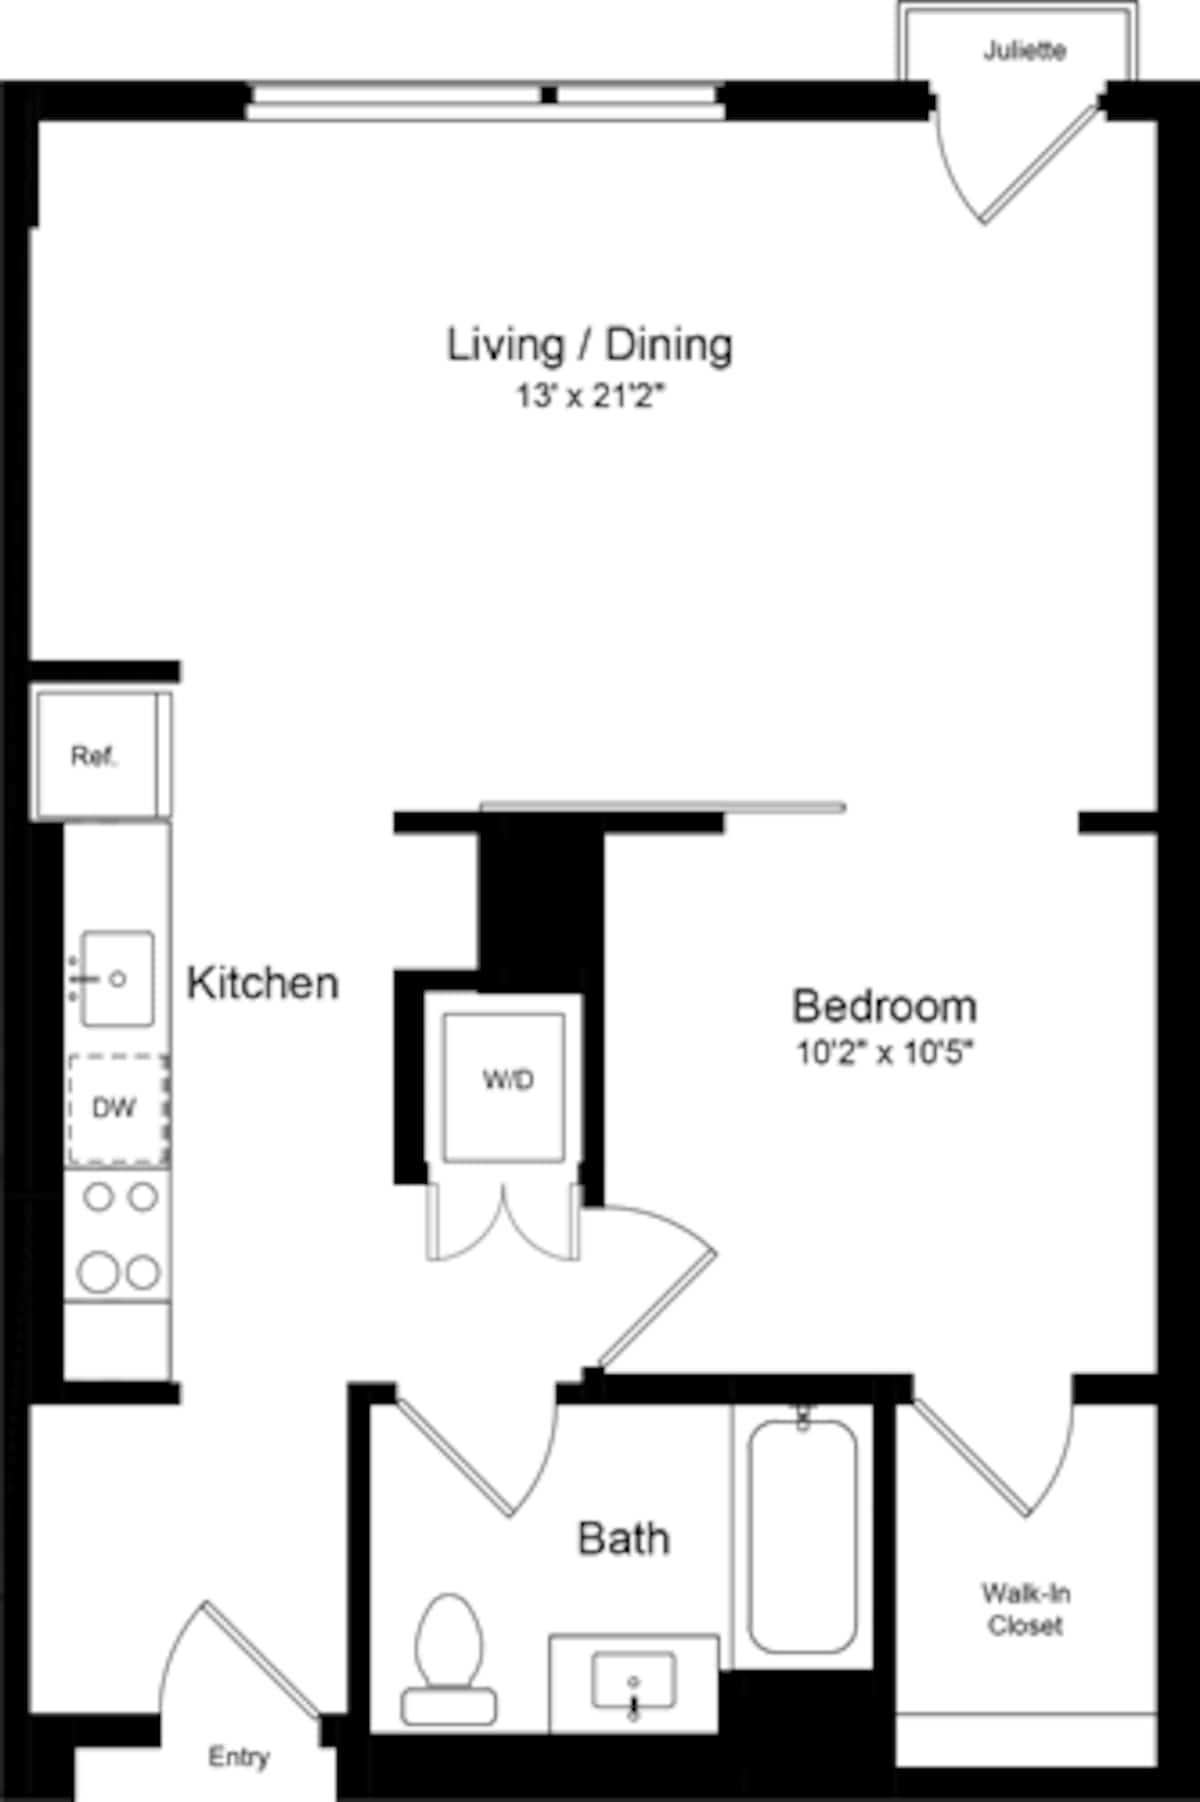 Floorplan diagram for 1 Bedroom GJ, showing 1 bedroom